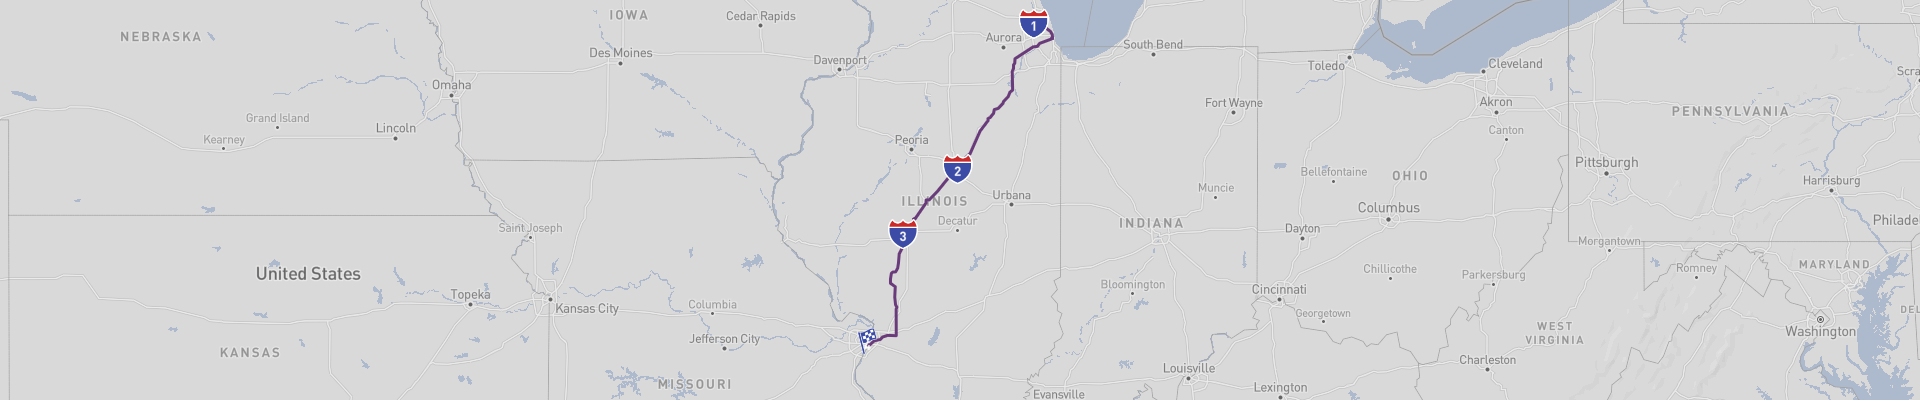 Route 66 historique de l'Illinois 